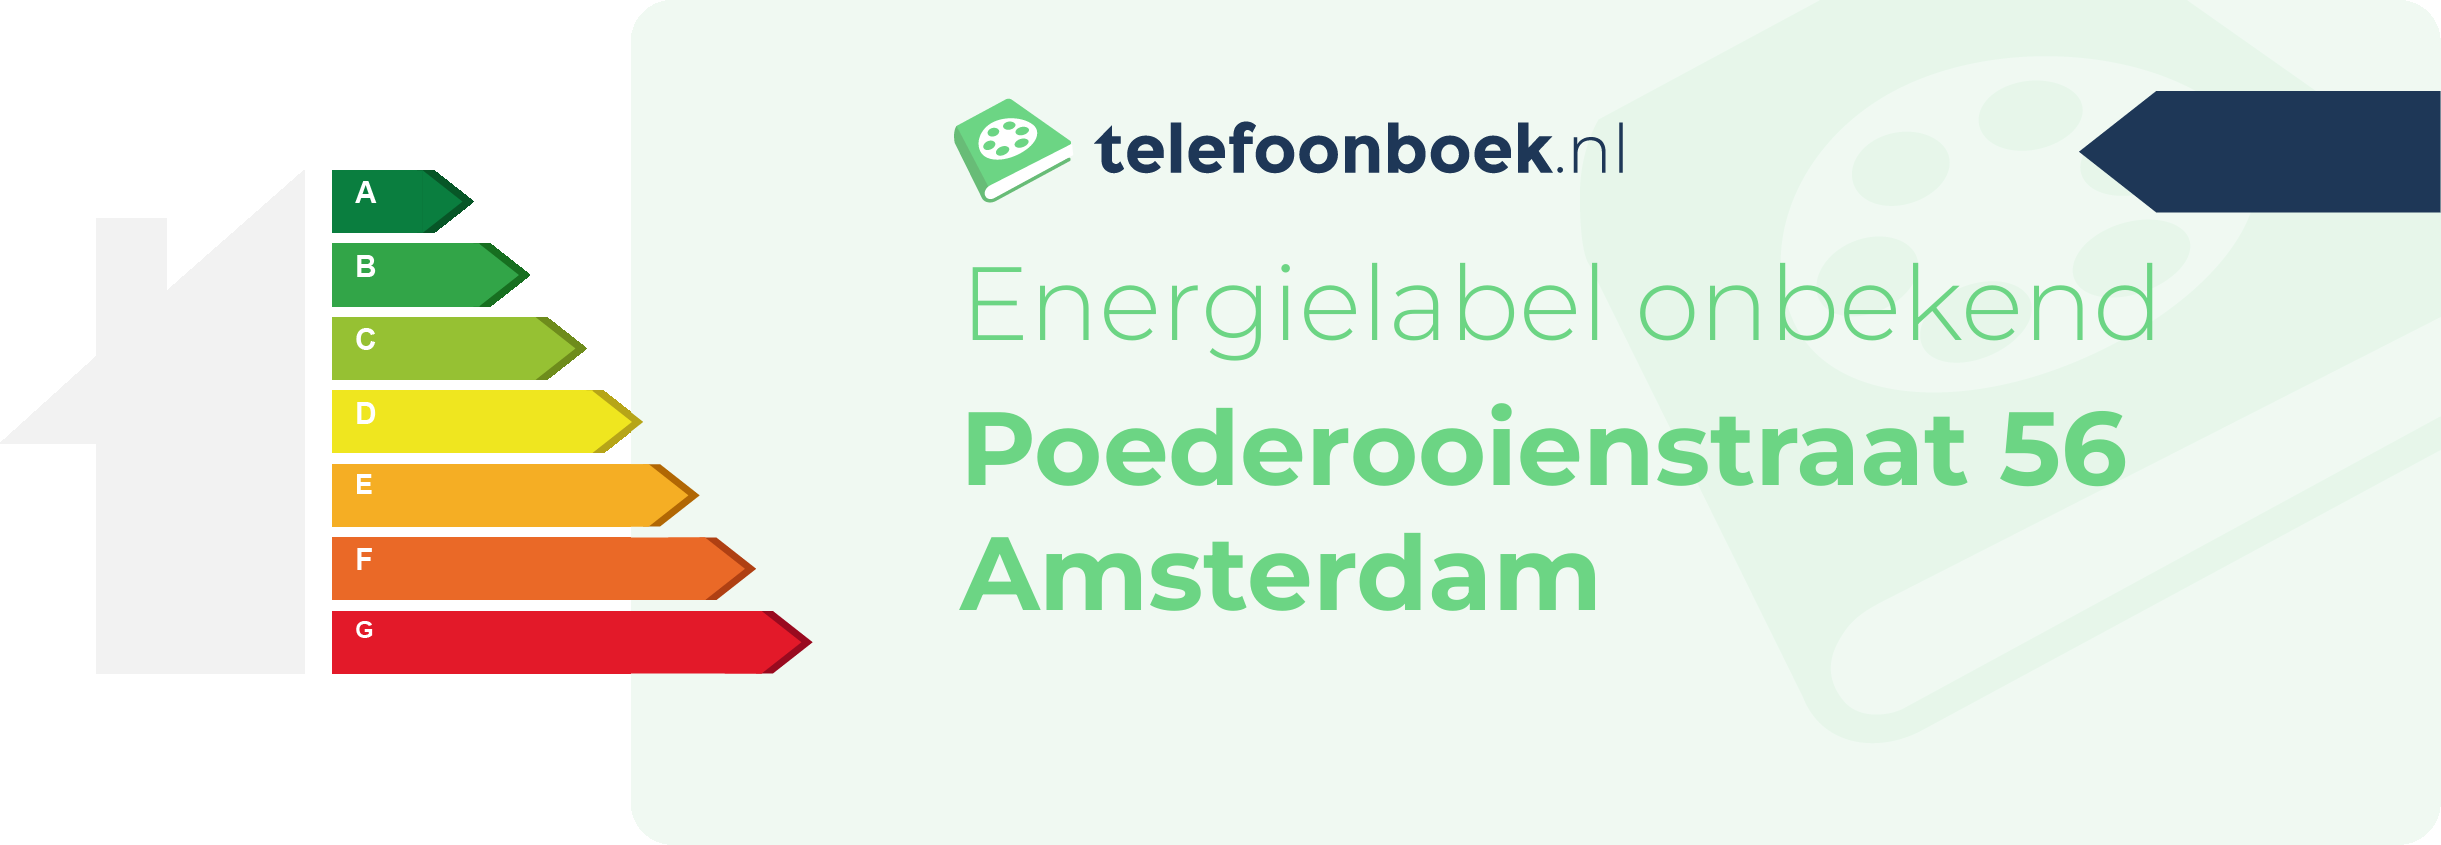 Energielabel Poederooienstraat 56 Amsterdam